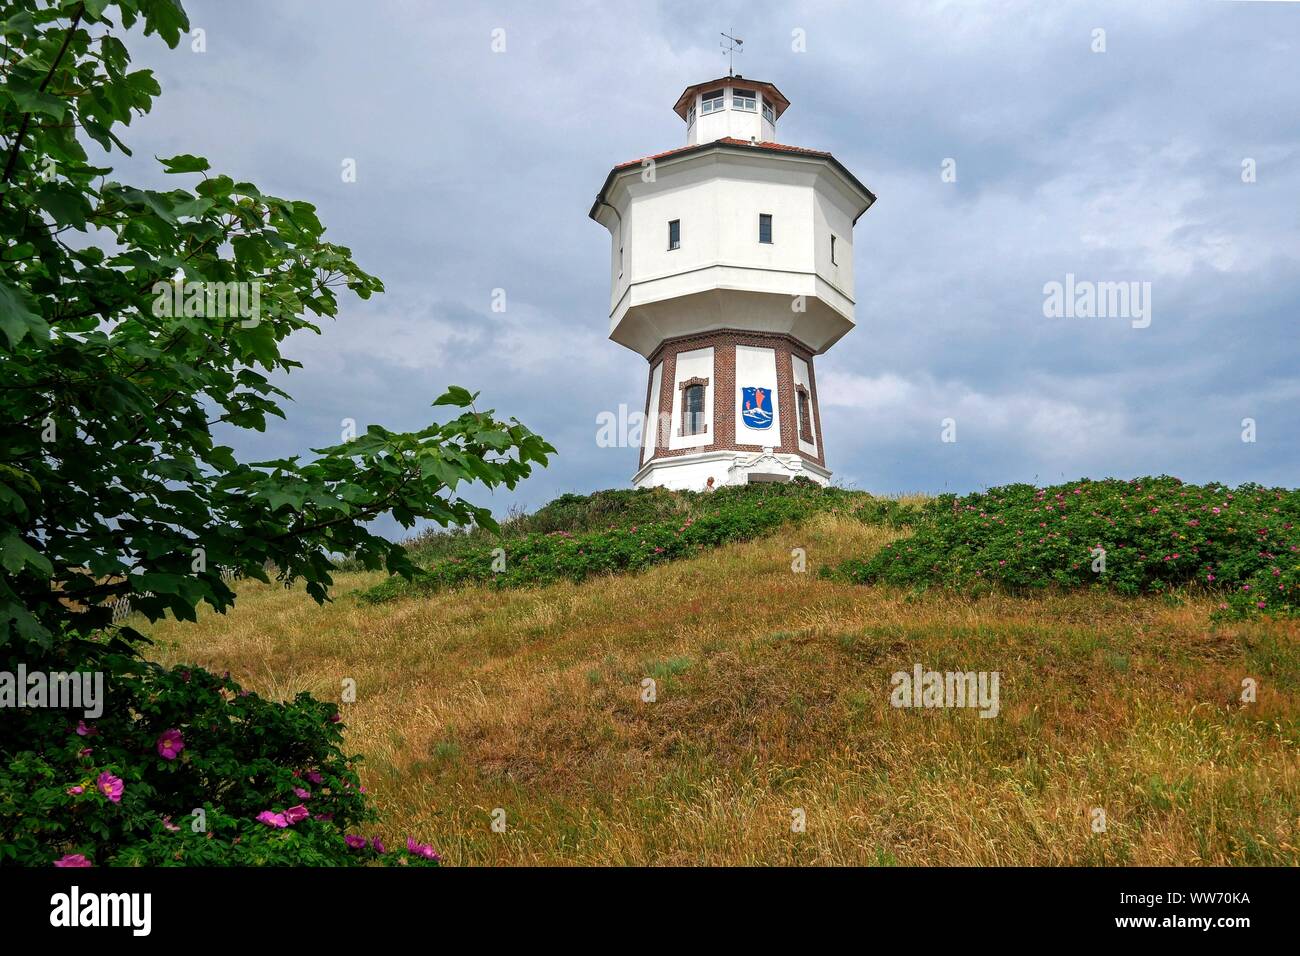 Alte Wasserturm, Insel Langeoog, Ostfriesische Inseln, Niedersachsen, Deutschland Stockfoto